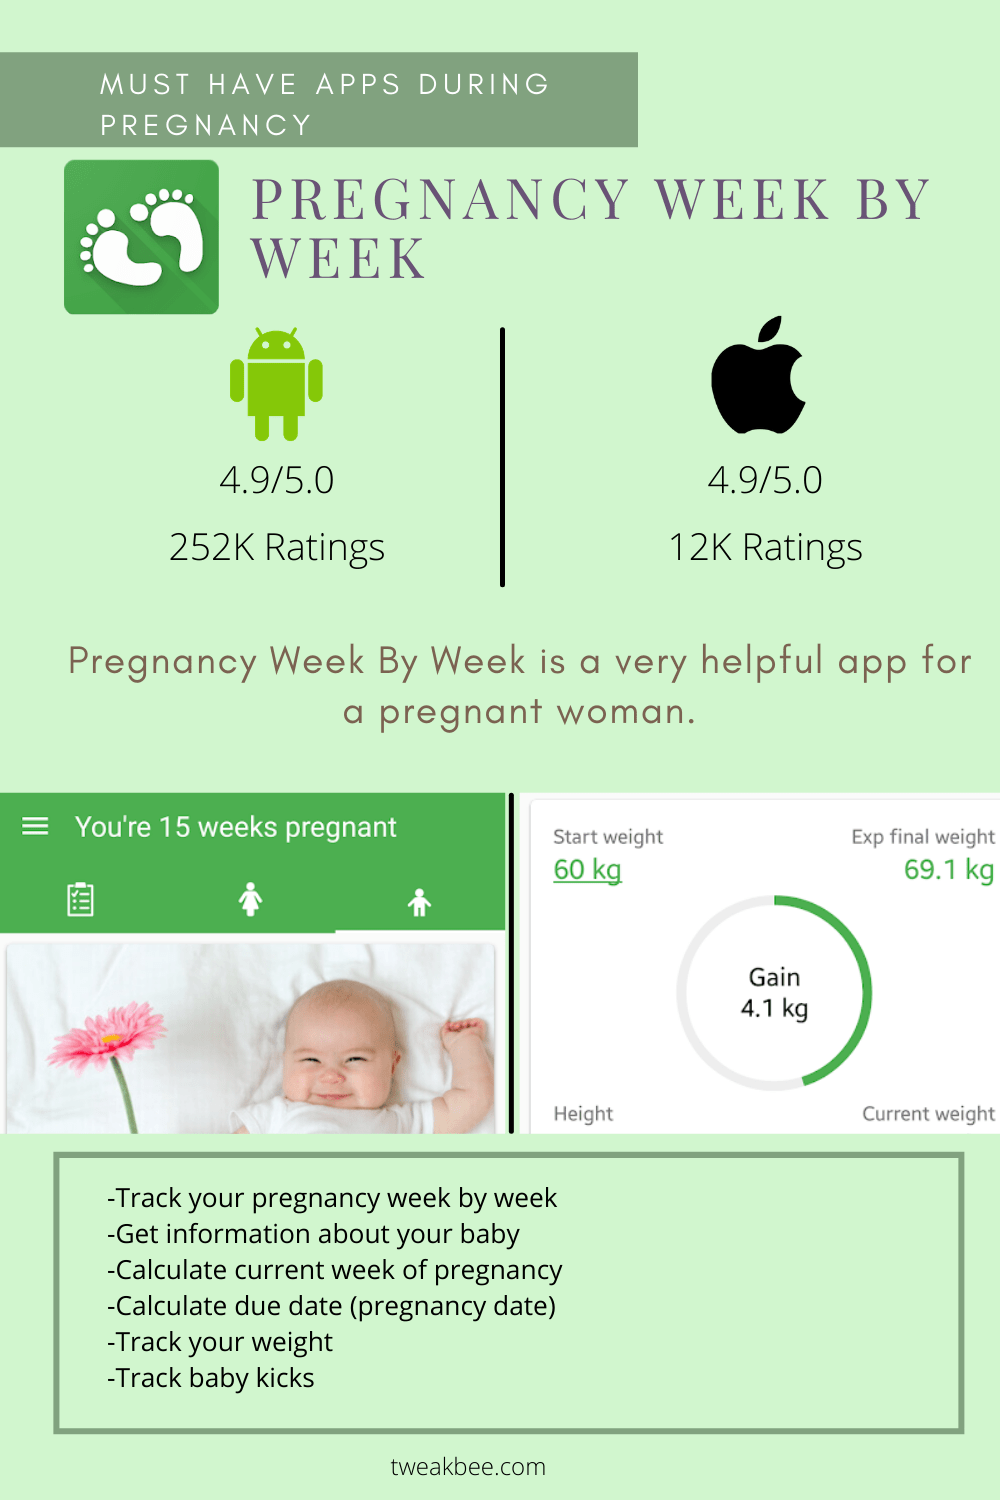 Pregnancy Week By Week review